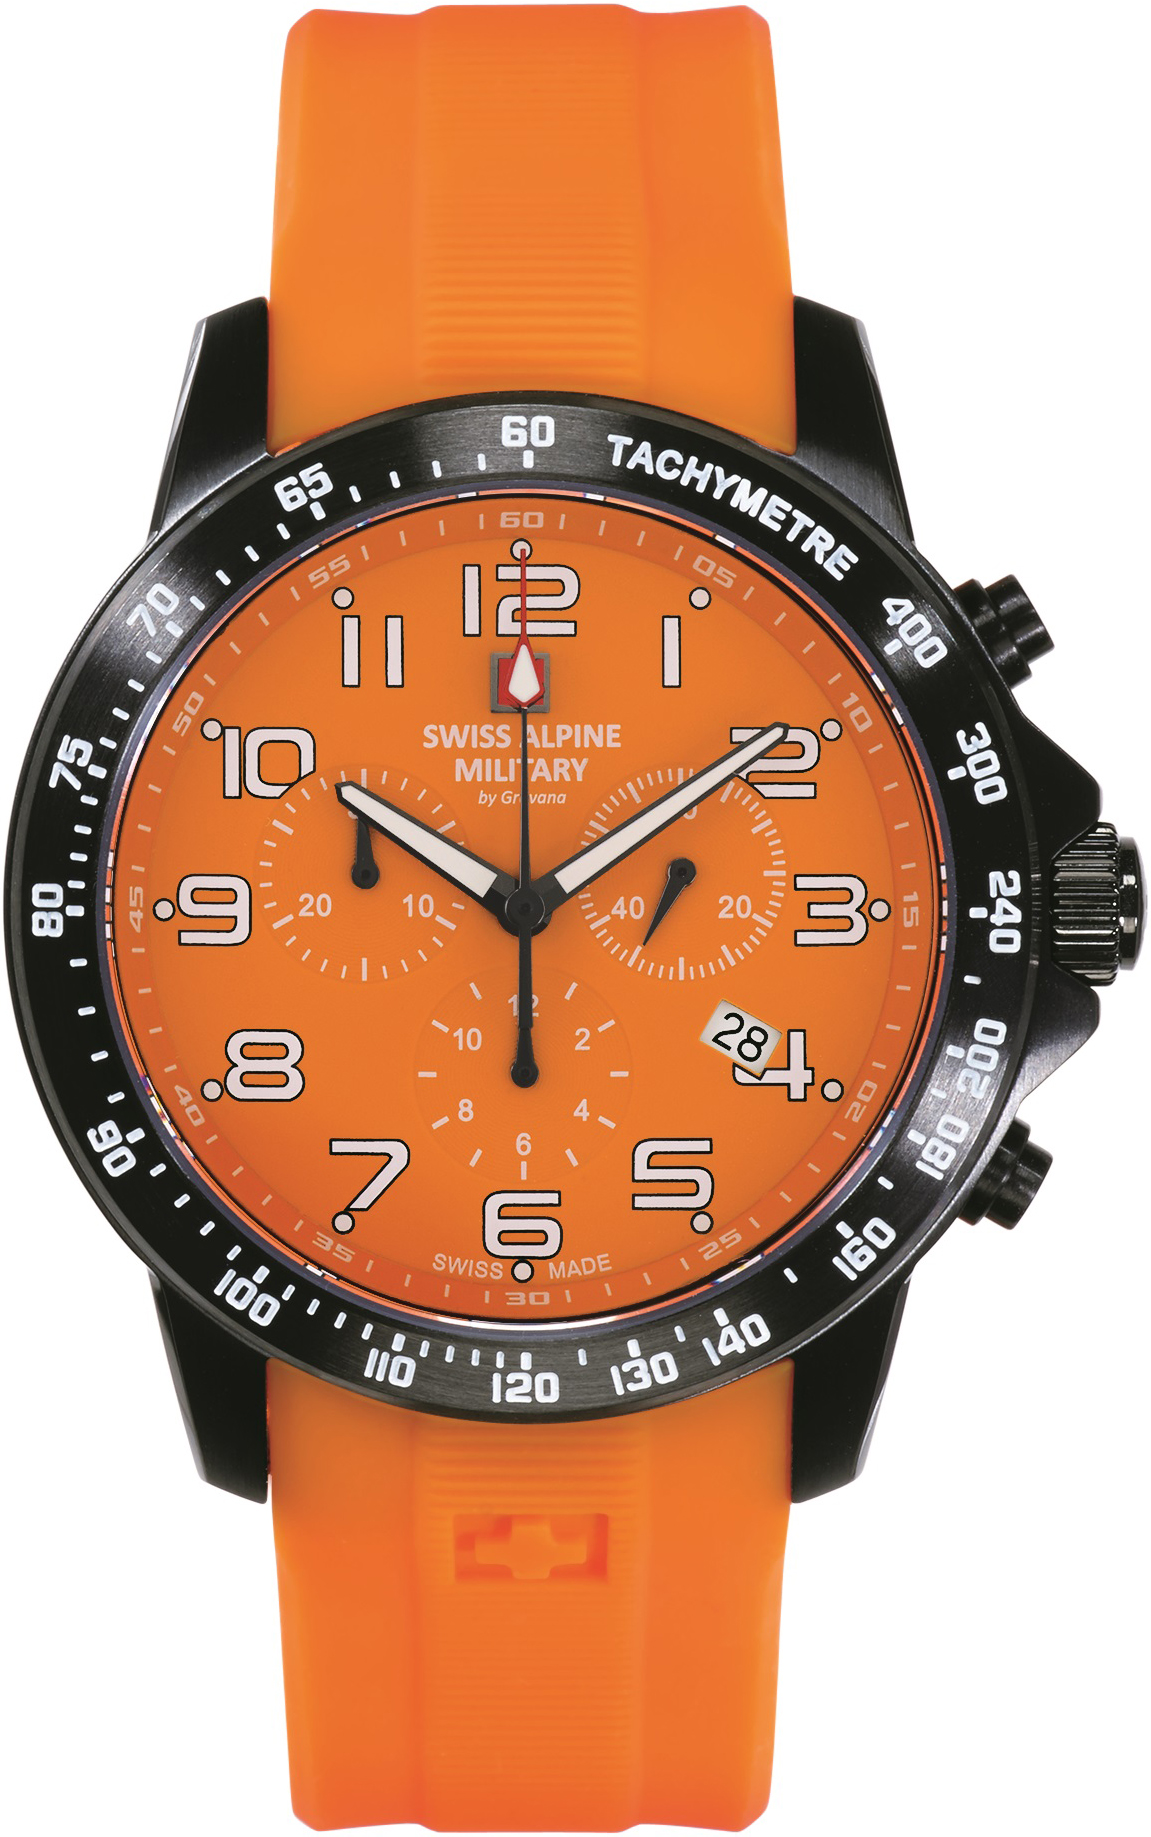 SWISS ALPINE MILITARY  Мужские швейцарские часы, кварцевый механизм, сталь с покрытием, 45 мм